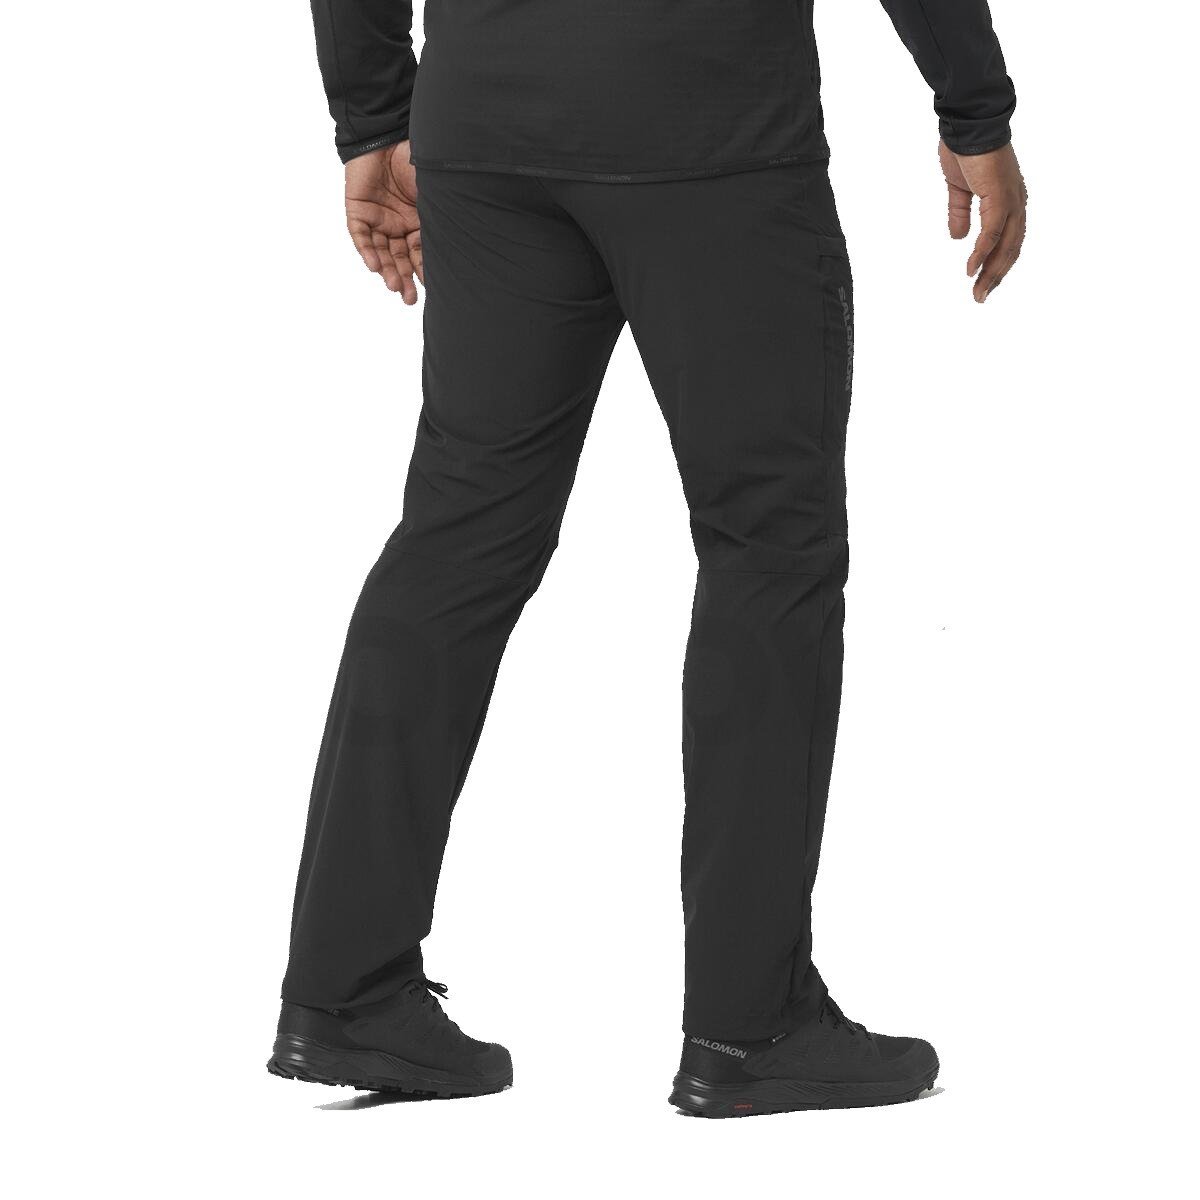 Salomon Wayfarer nohavice M - čierne (štandardná dĺžka)